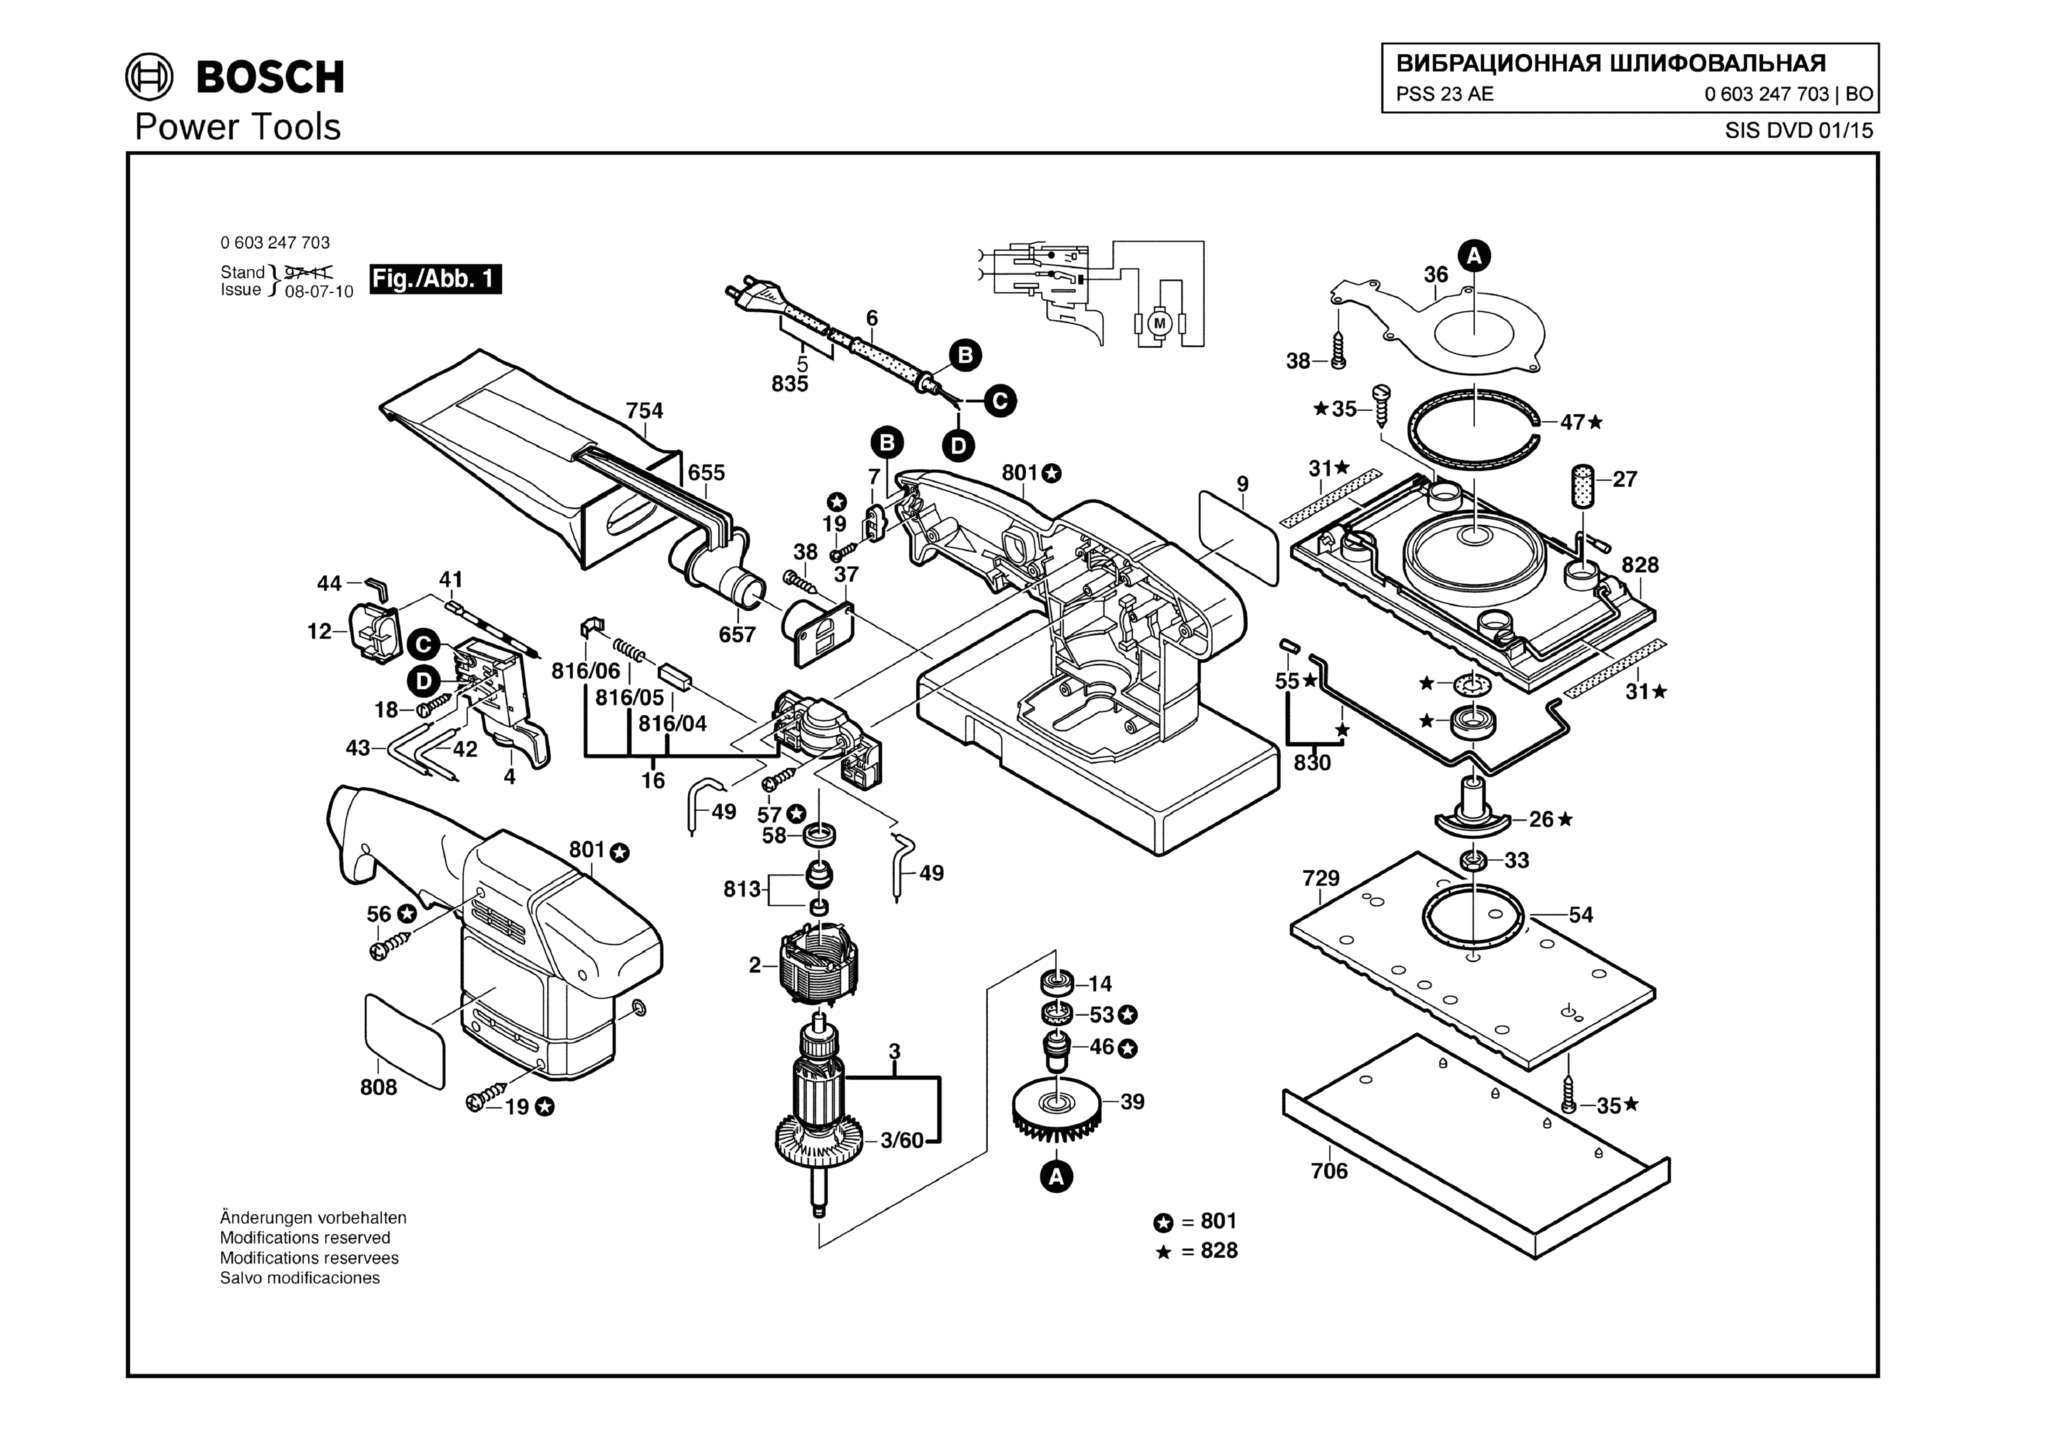 Запчасти, схема и деталировка Bosch PSS 23 AE (ТИП 0603247703)